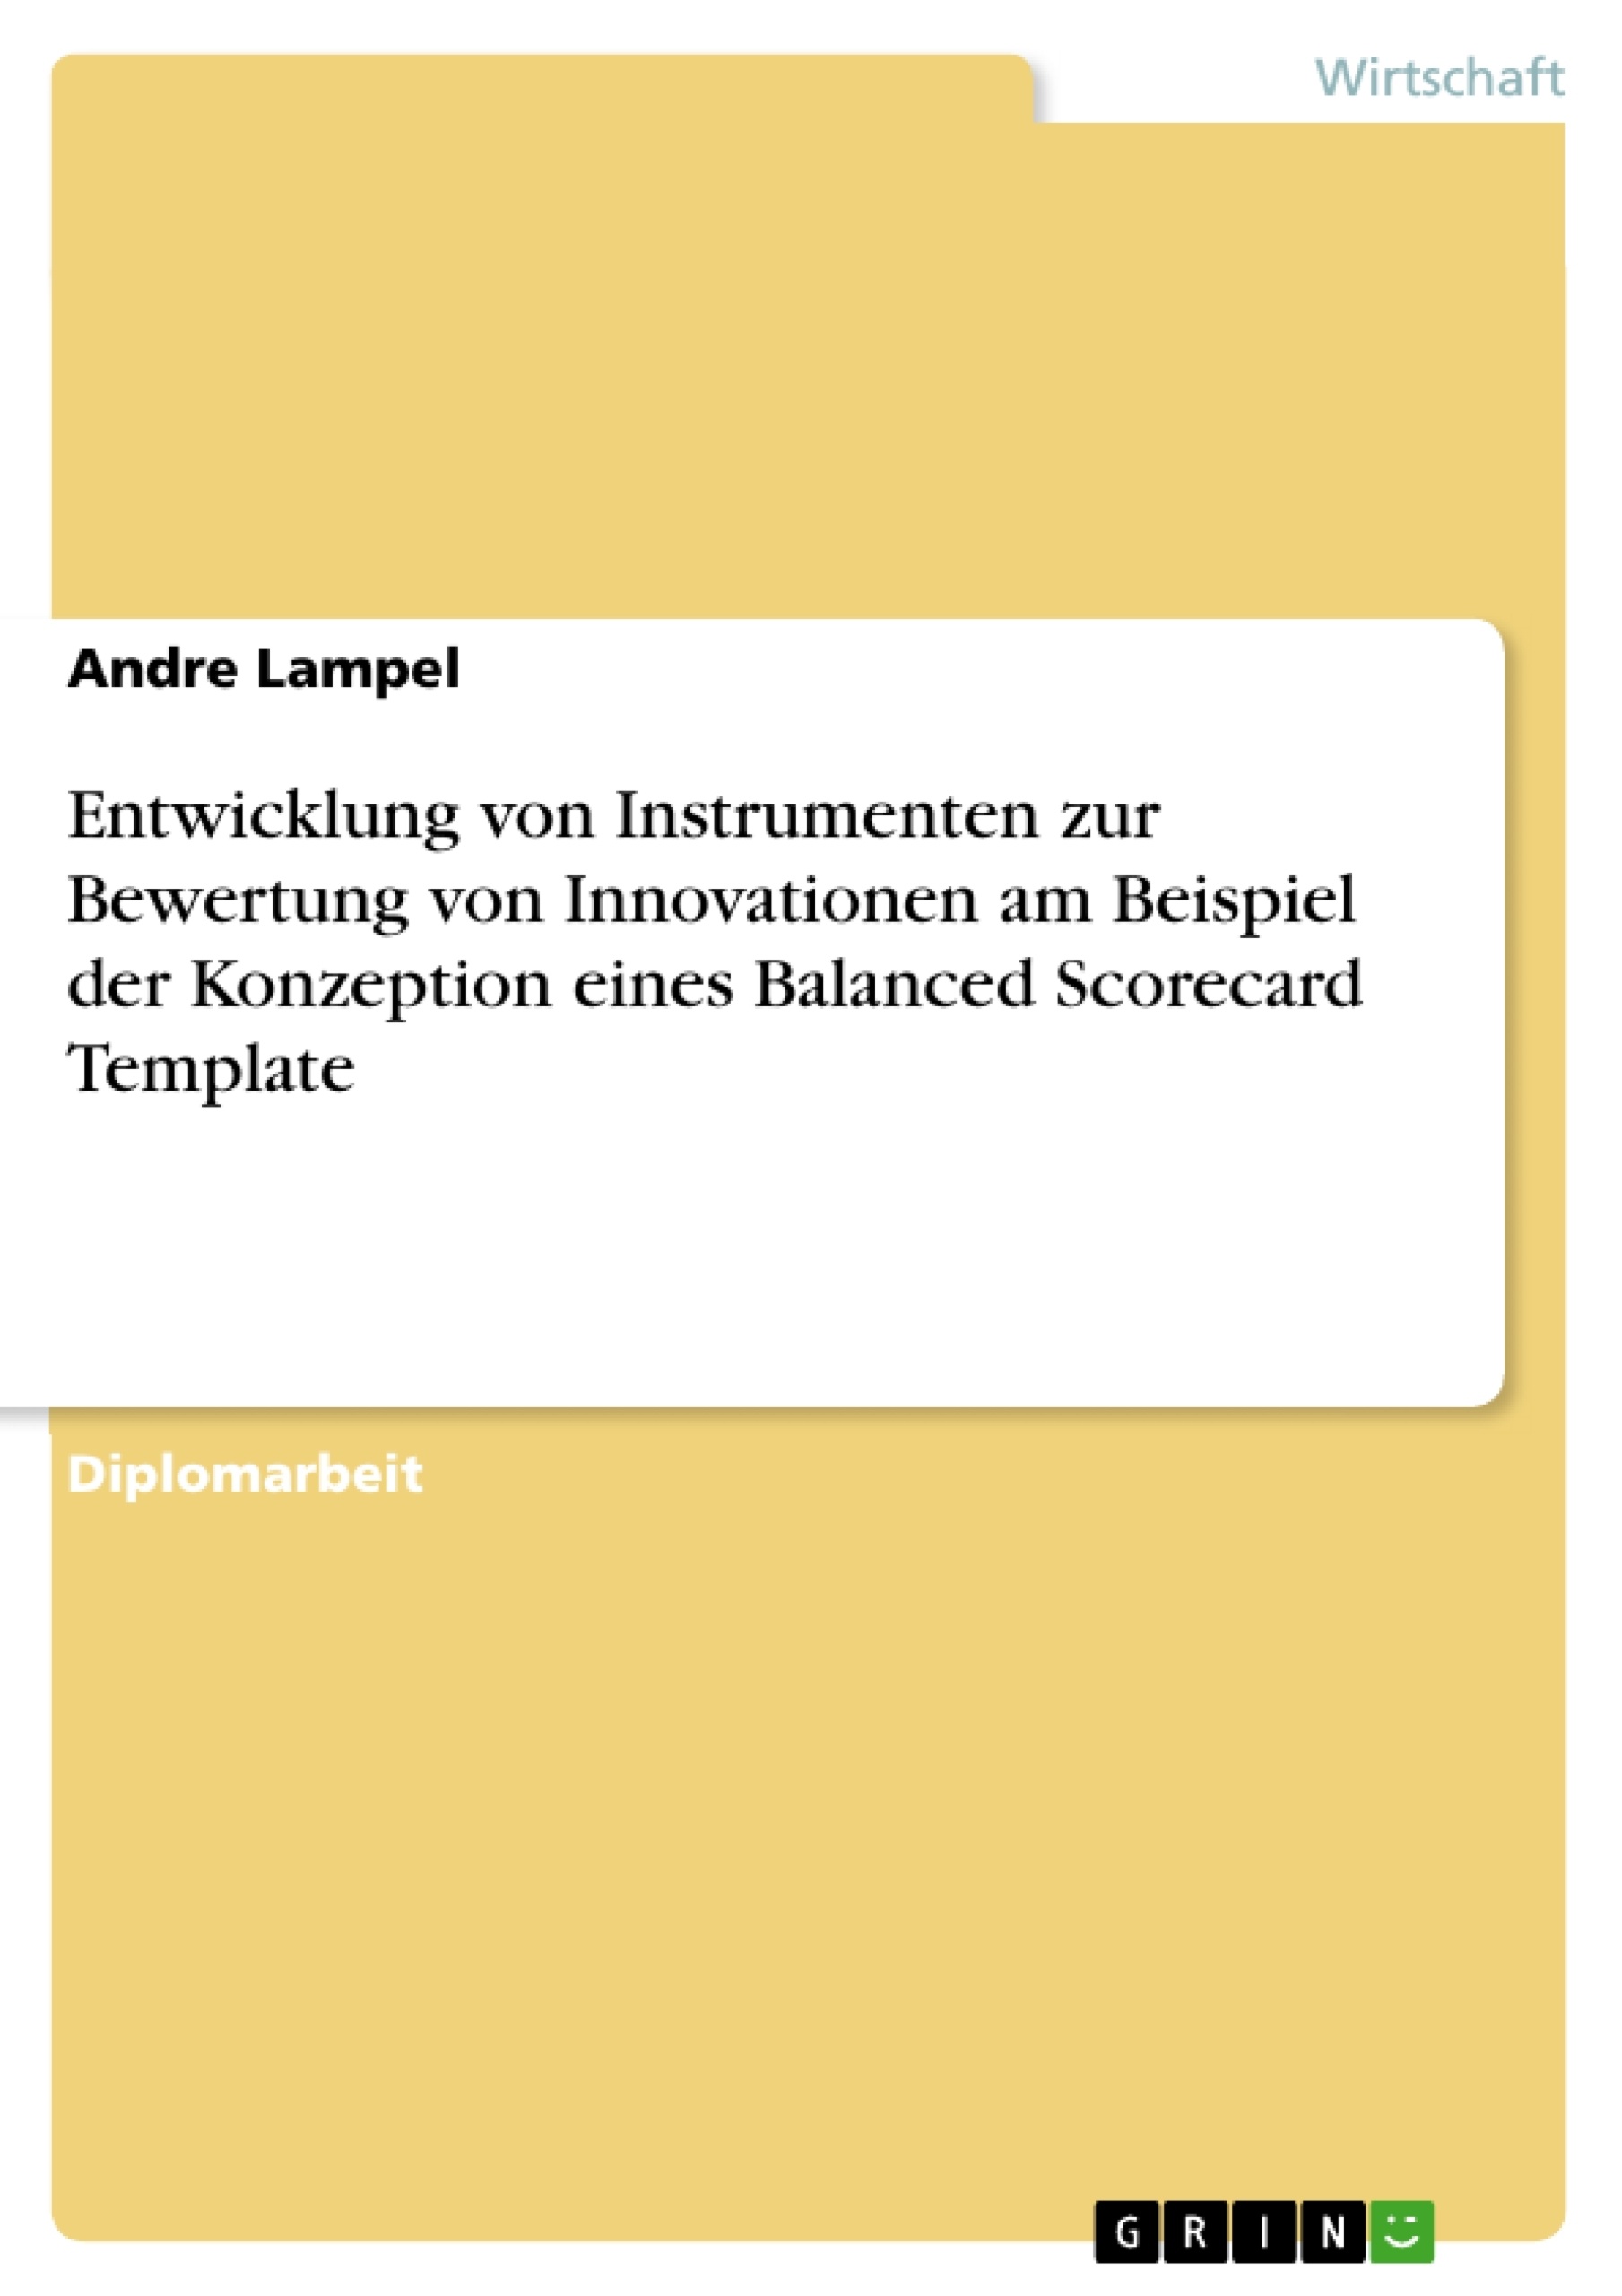 Titel: Entwicklung von Instrumenten zur Bewertung von Innovationen am Beispiel der Konzeption eines Balanced Scorecard Template 